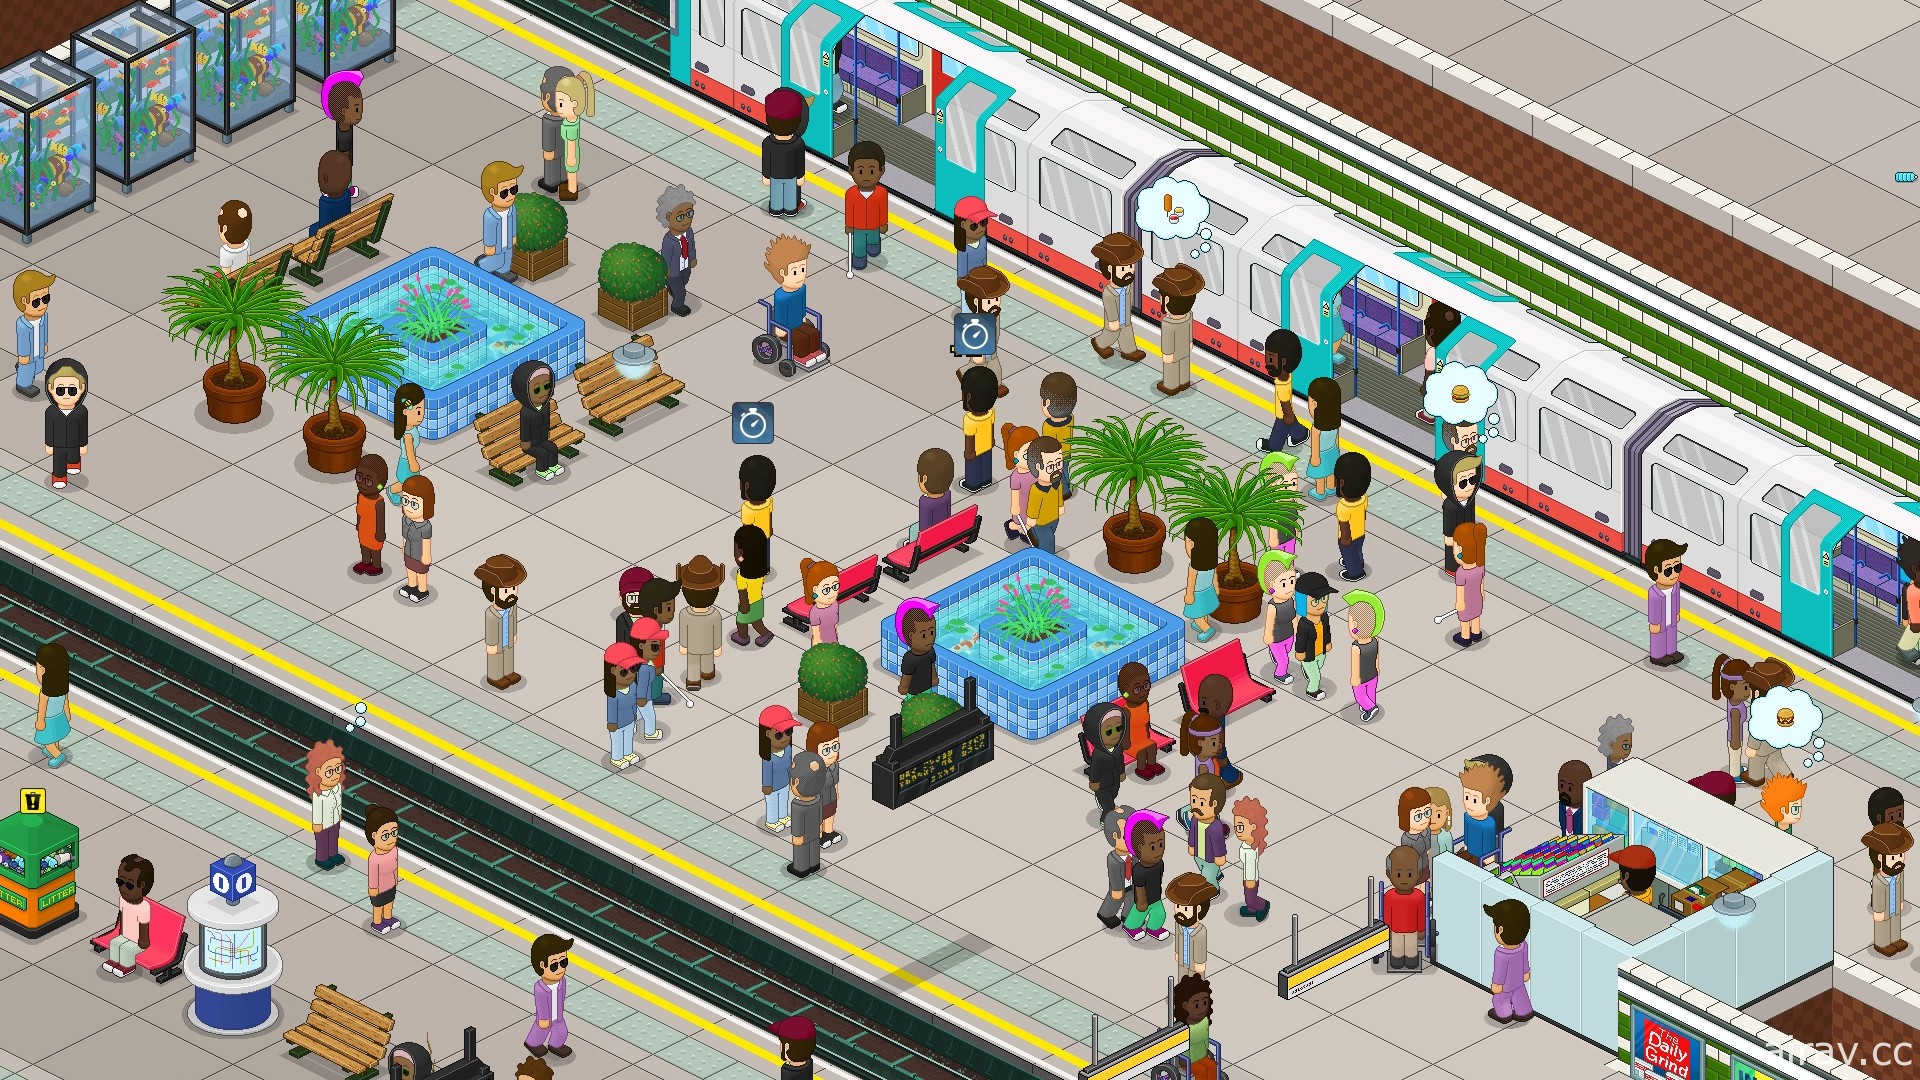 地鐵題材模擬新作《通勤地鐵戰》1.0 版正式上市 新增多種乘客角色、員工制服等功能